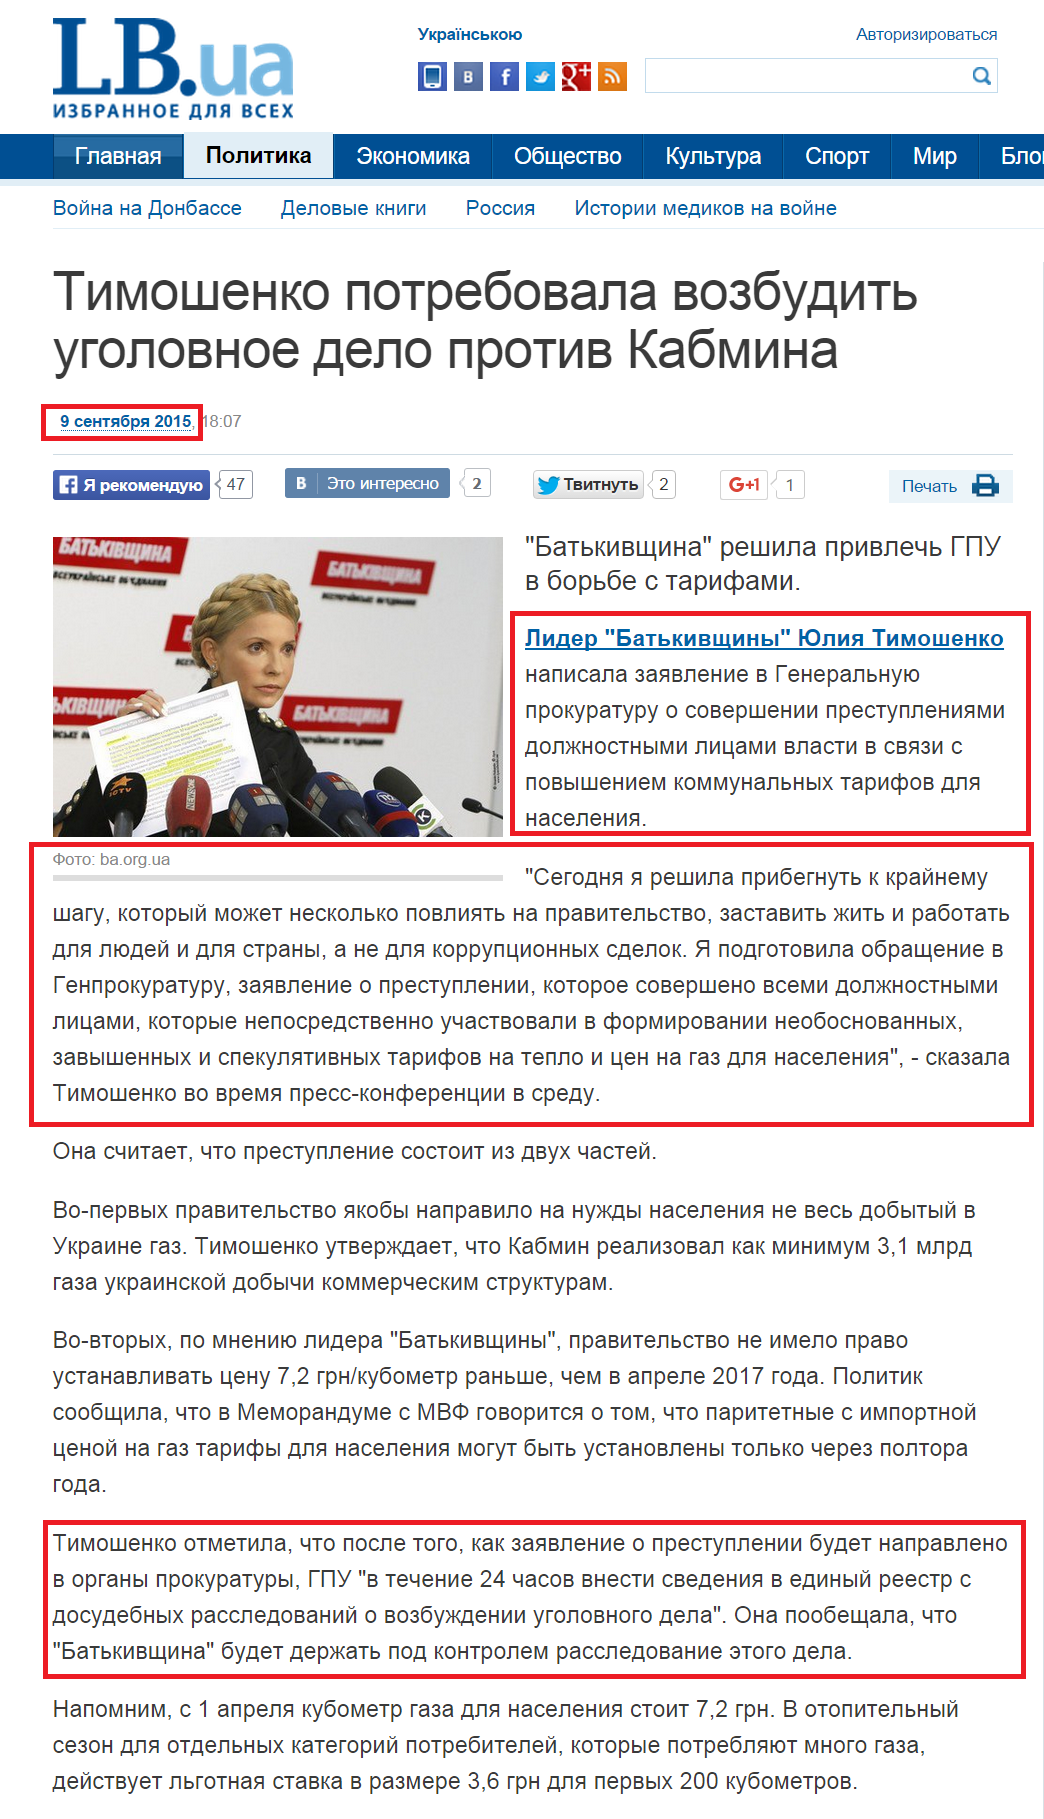 http://lb.ua/news/2015/09/09/315536_timoshenko_potrebovala_vozbudit.html